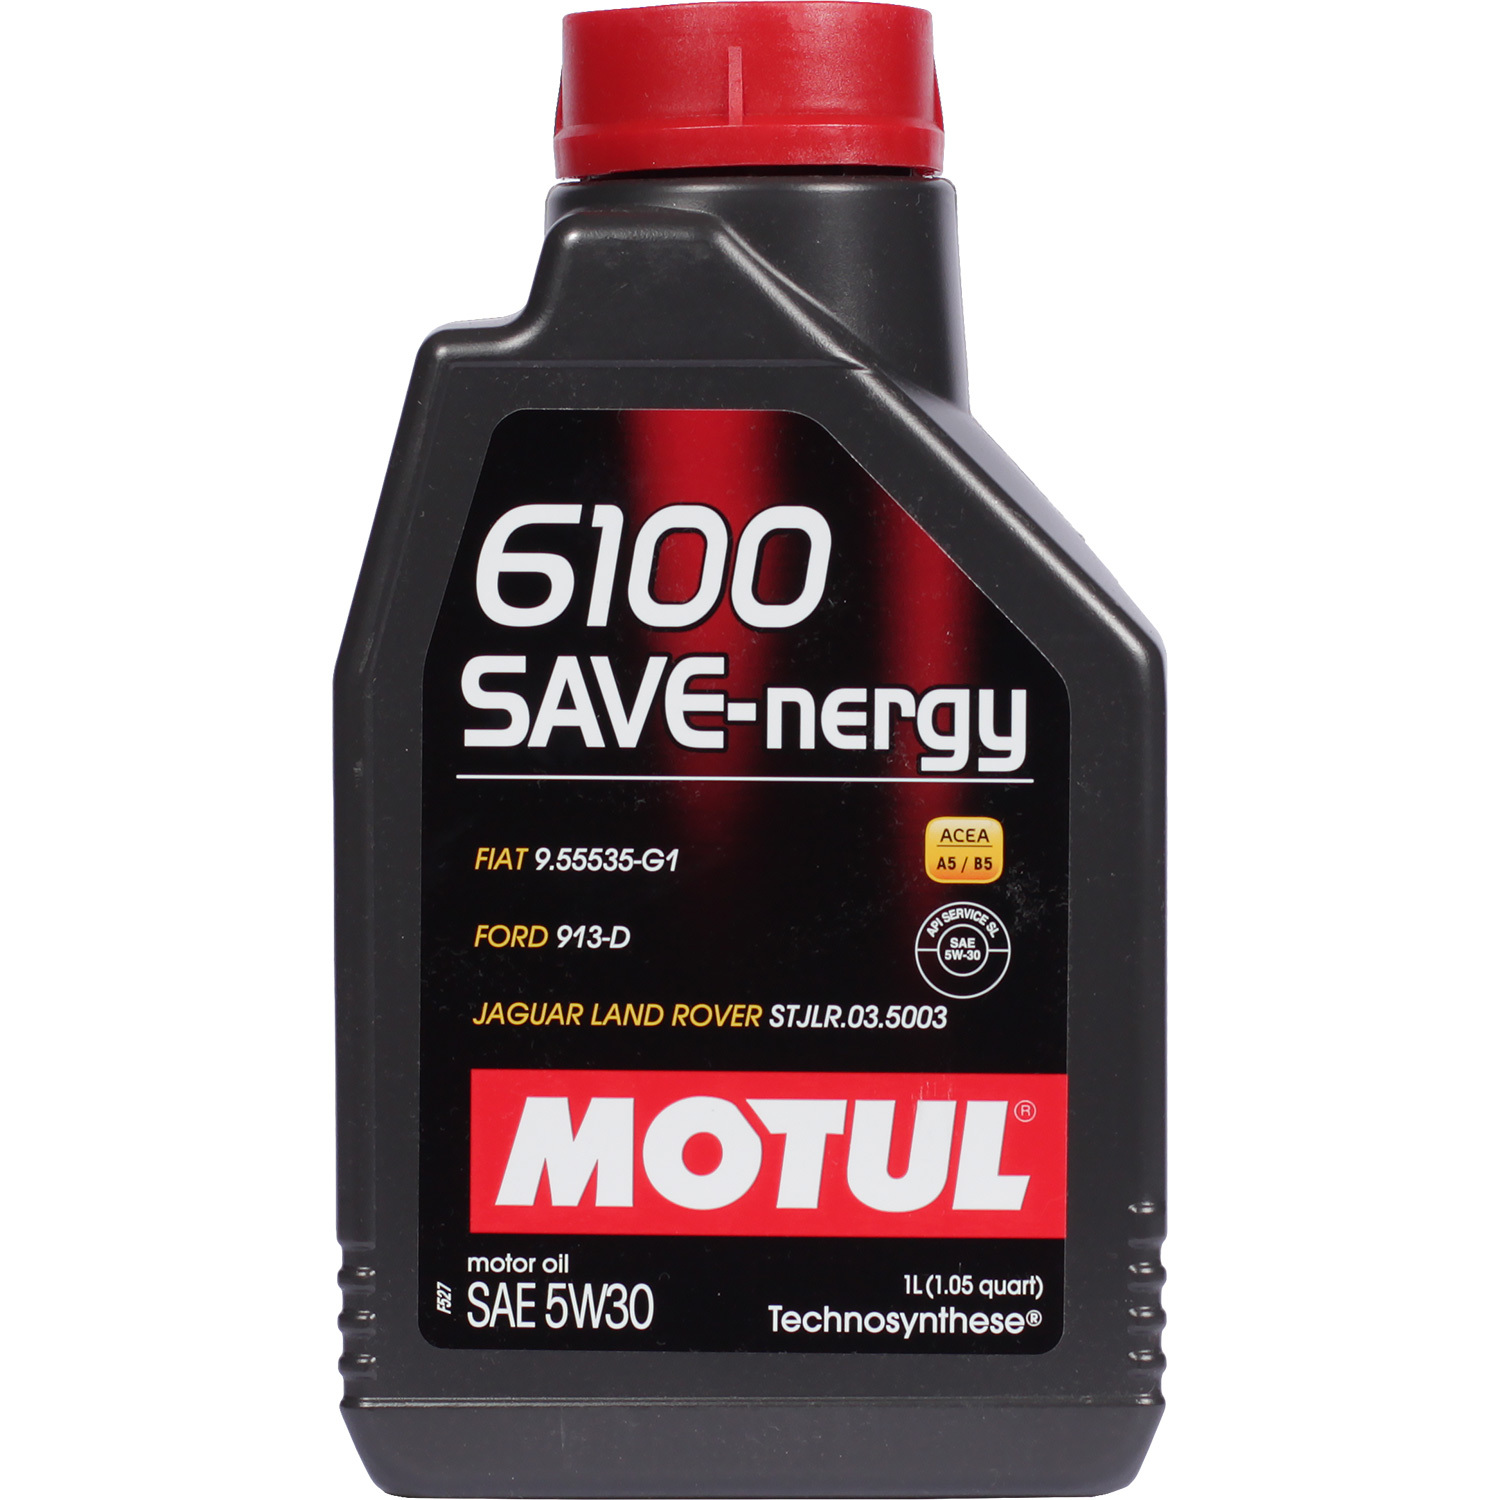 Motul Моторное масло Motul 6100 SAVE-NERGY 5W-30, 1 л motul моторное масло motul 8100 eco nergy 5w 30 5 л